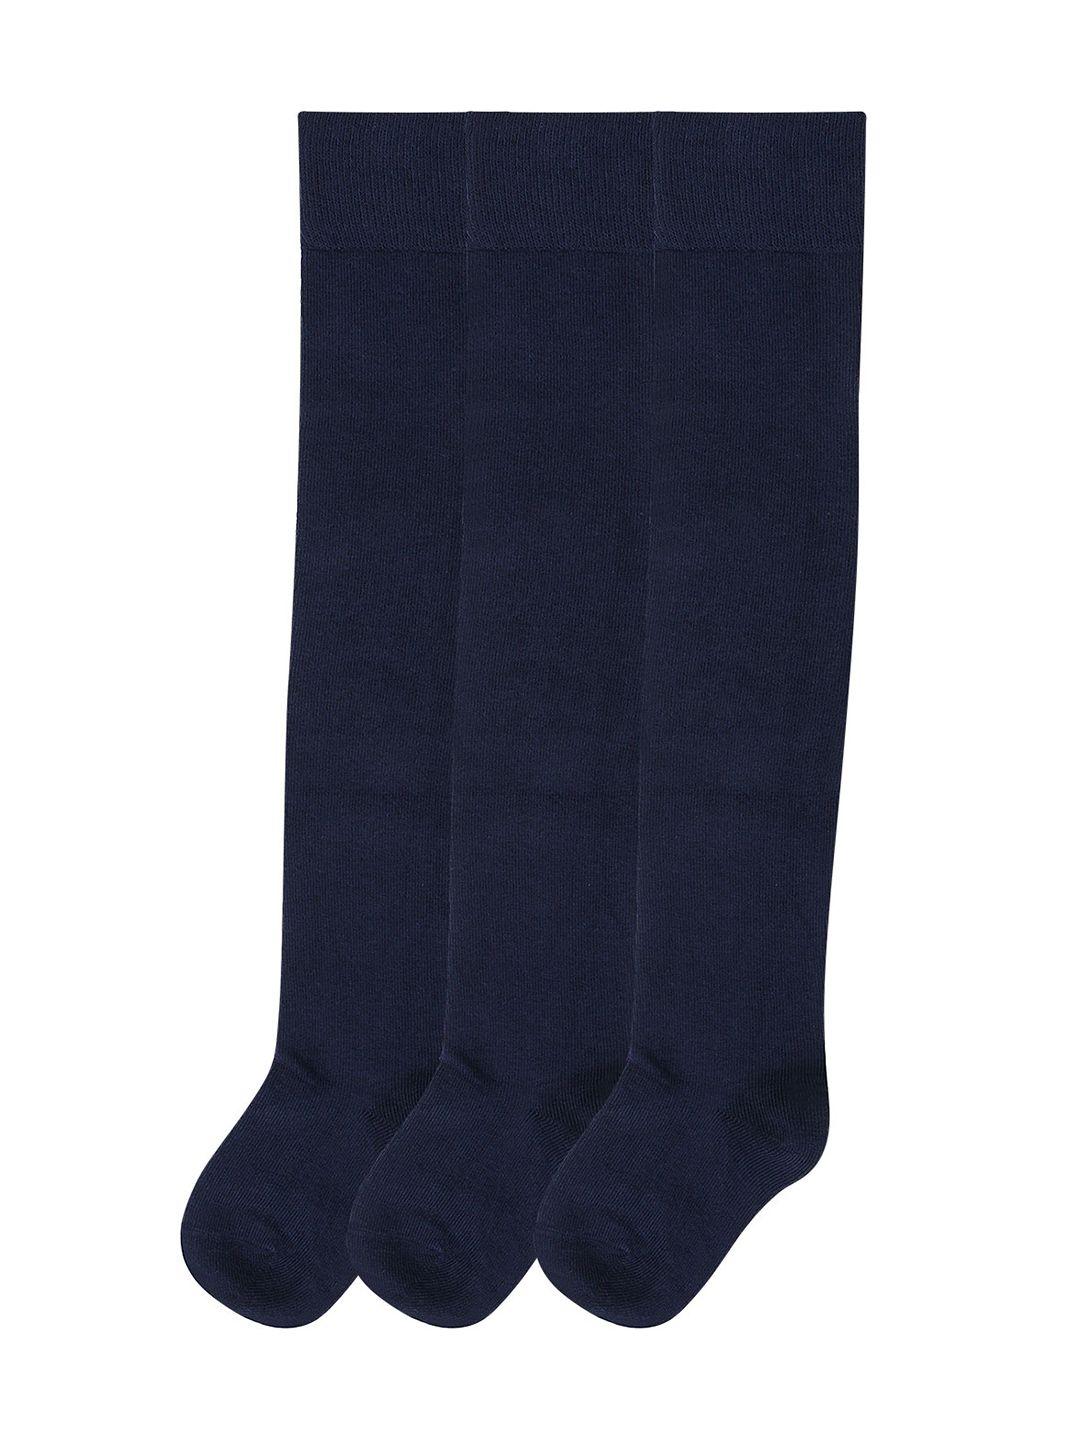 Bonjour Girls Pack Of 3 Navy Blue Solid Knee Length Socks